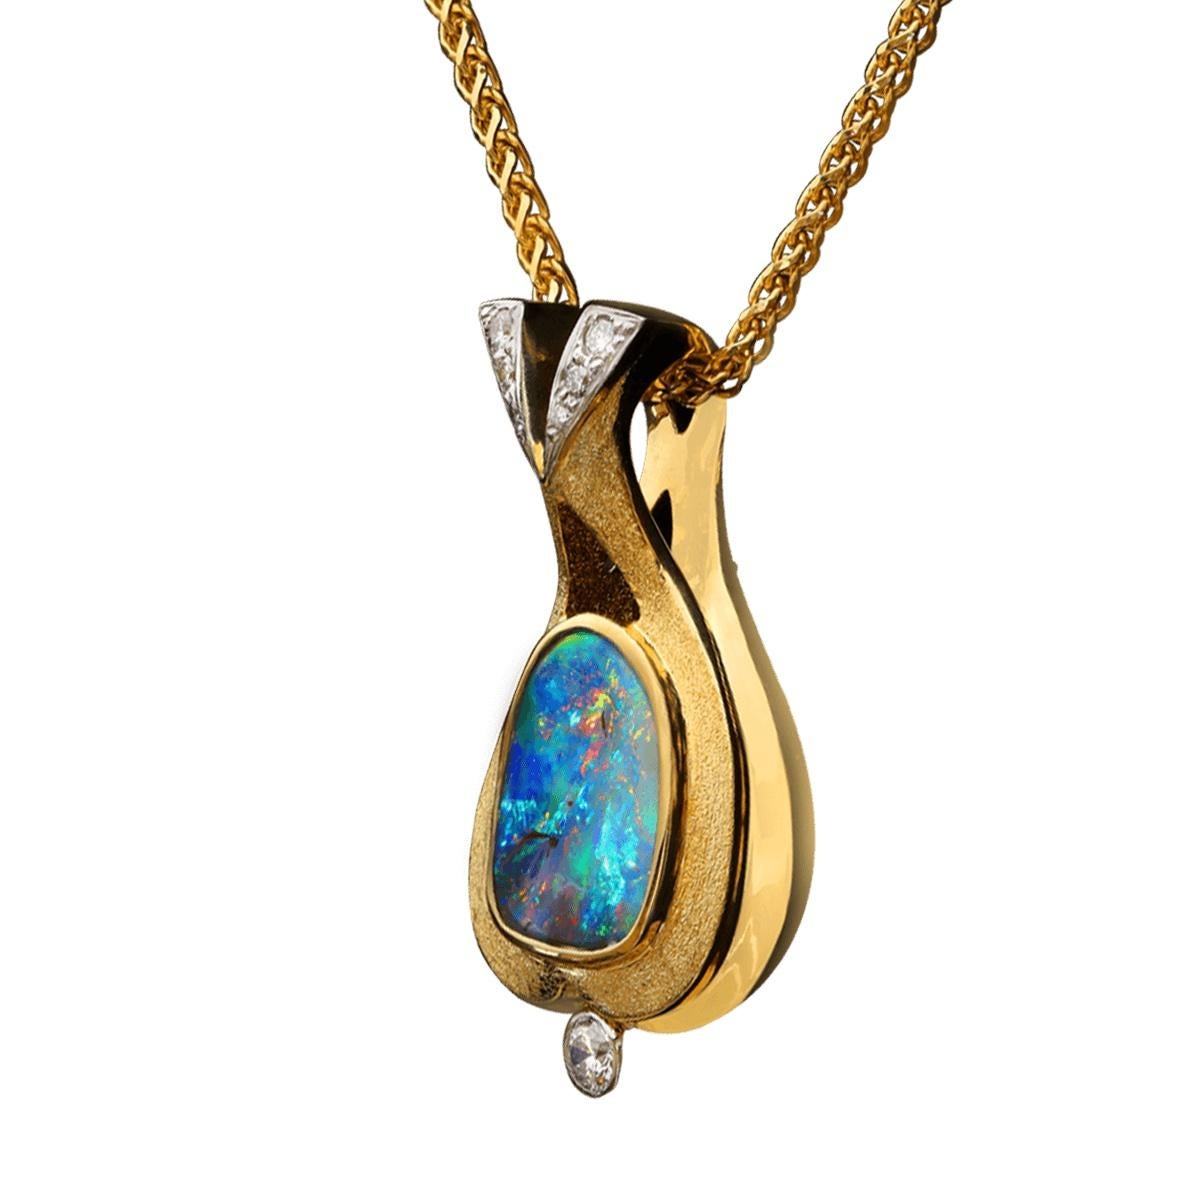 Liebhabern von blau-grünen Opalen wird dieser wunderschöne Anhänger sicher gefallen. Ein sehr heller, blaugrüner Boulder-Opal mit orangefarbenen und goldenen Reflexen und einem Hauch von Violett - dieser Stein ist wirklich ein Juwel. Umgeben von